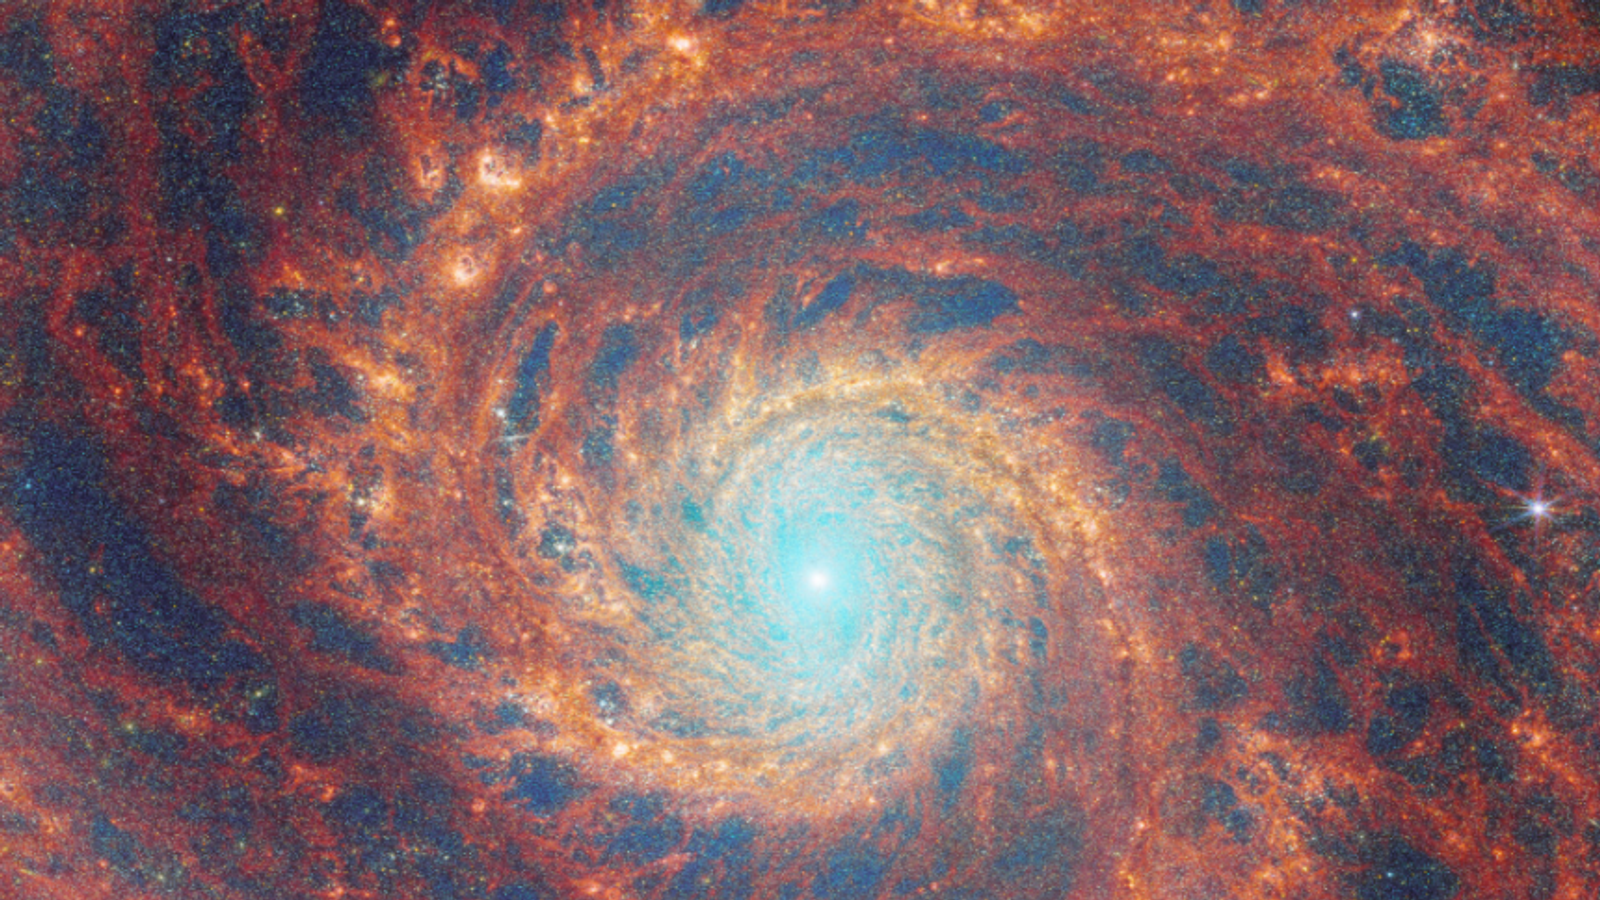 Il telescopio spaziale James Webb cattura una galassia lontana e vorticosa con dettagli sorprendenti in una nuova immagine  Notizie scientifiche e tecnologiche